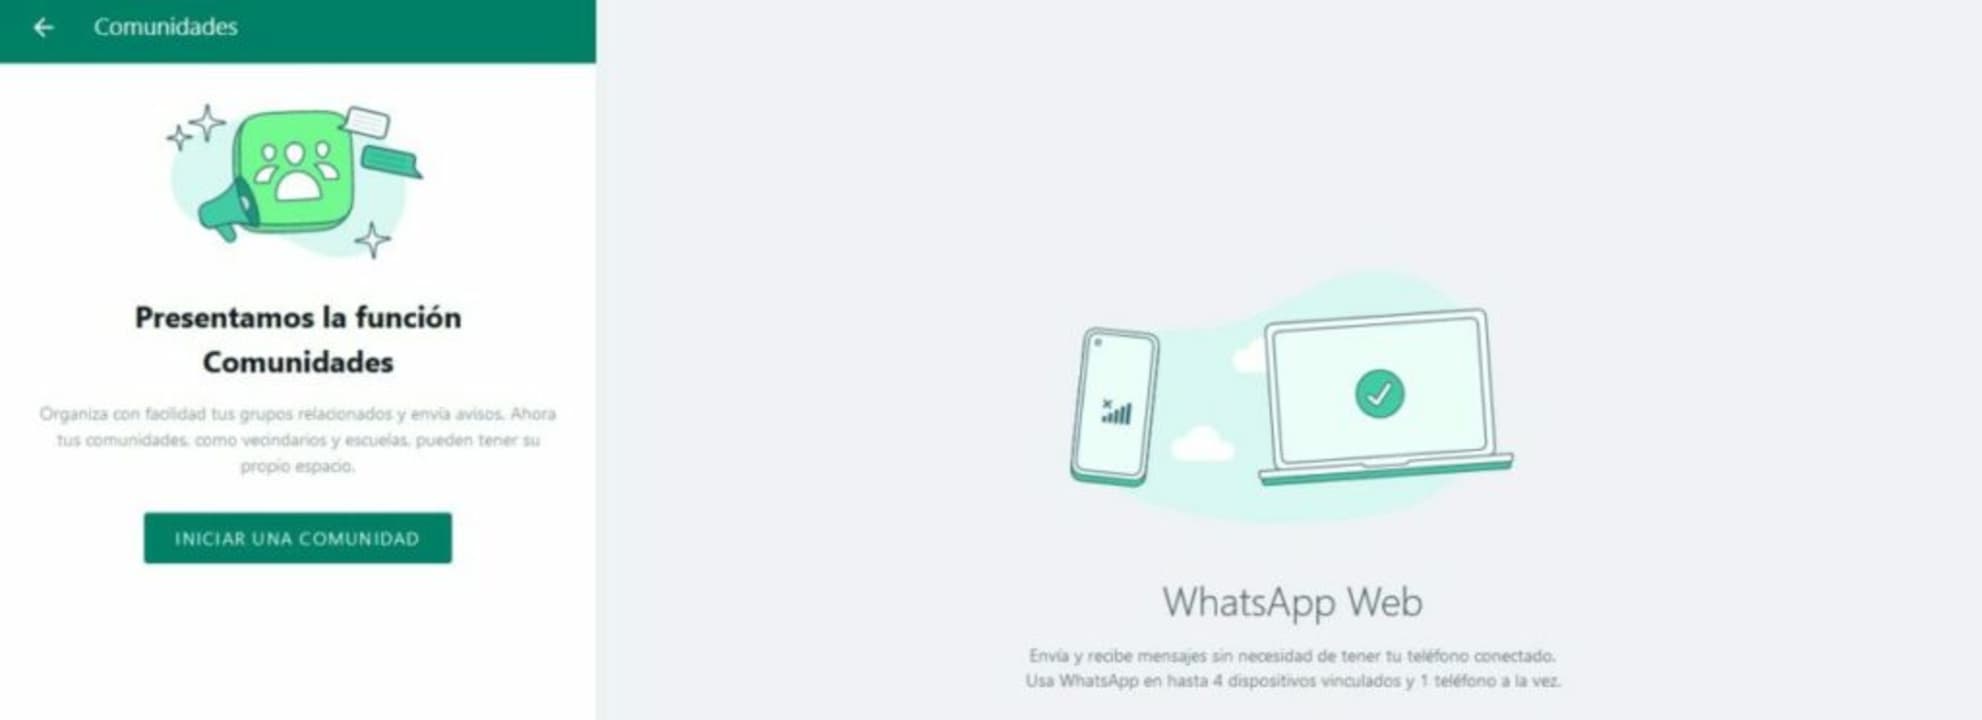 WhatsApp Web uso